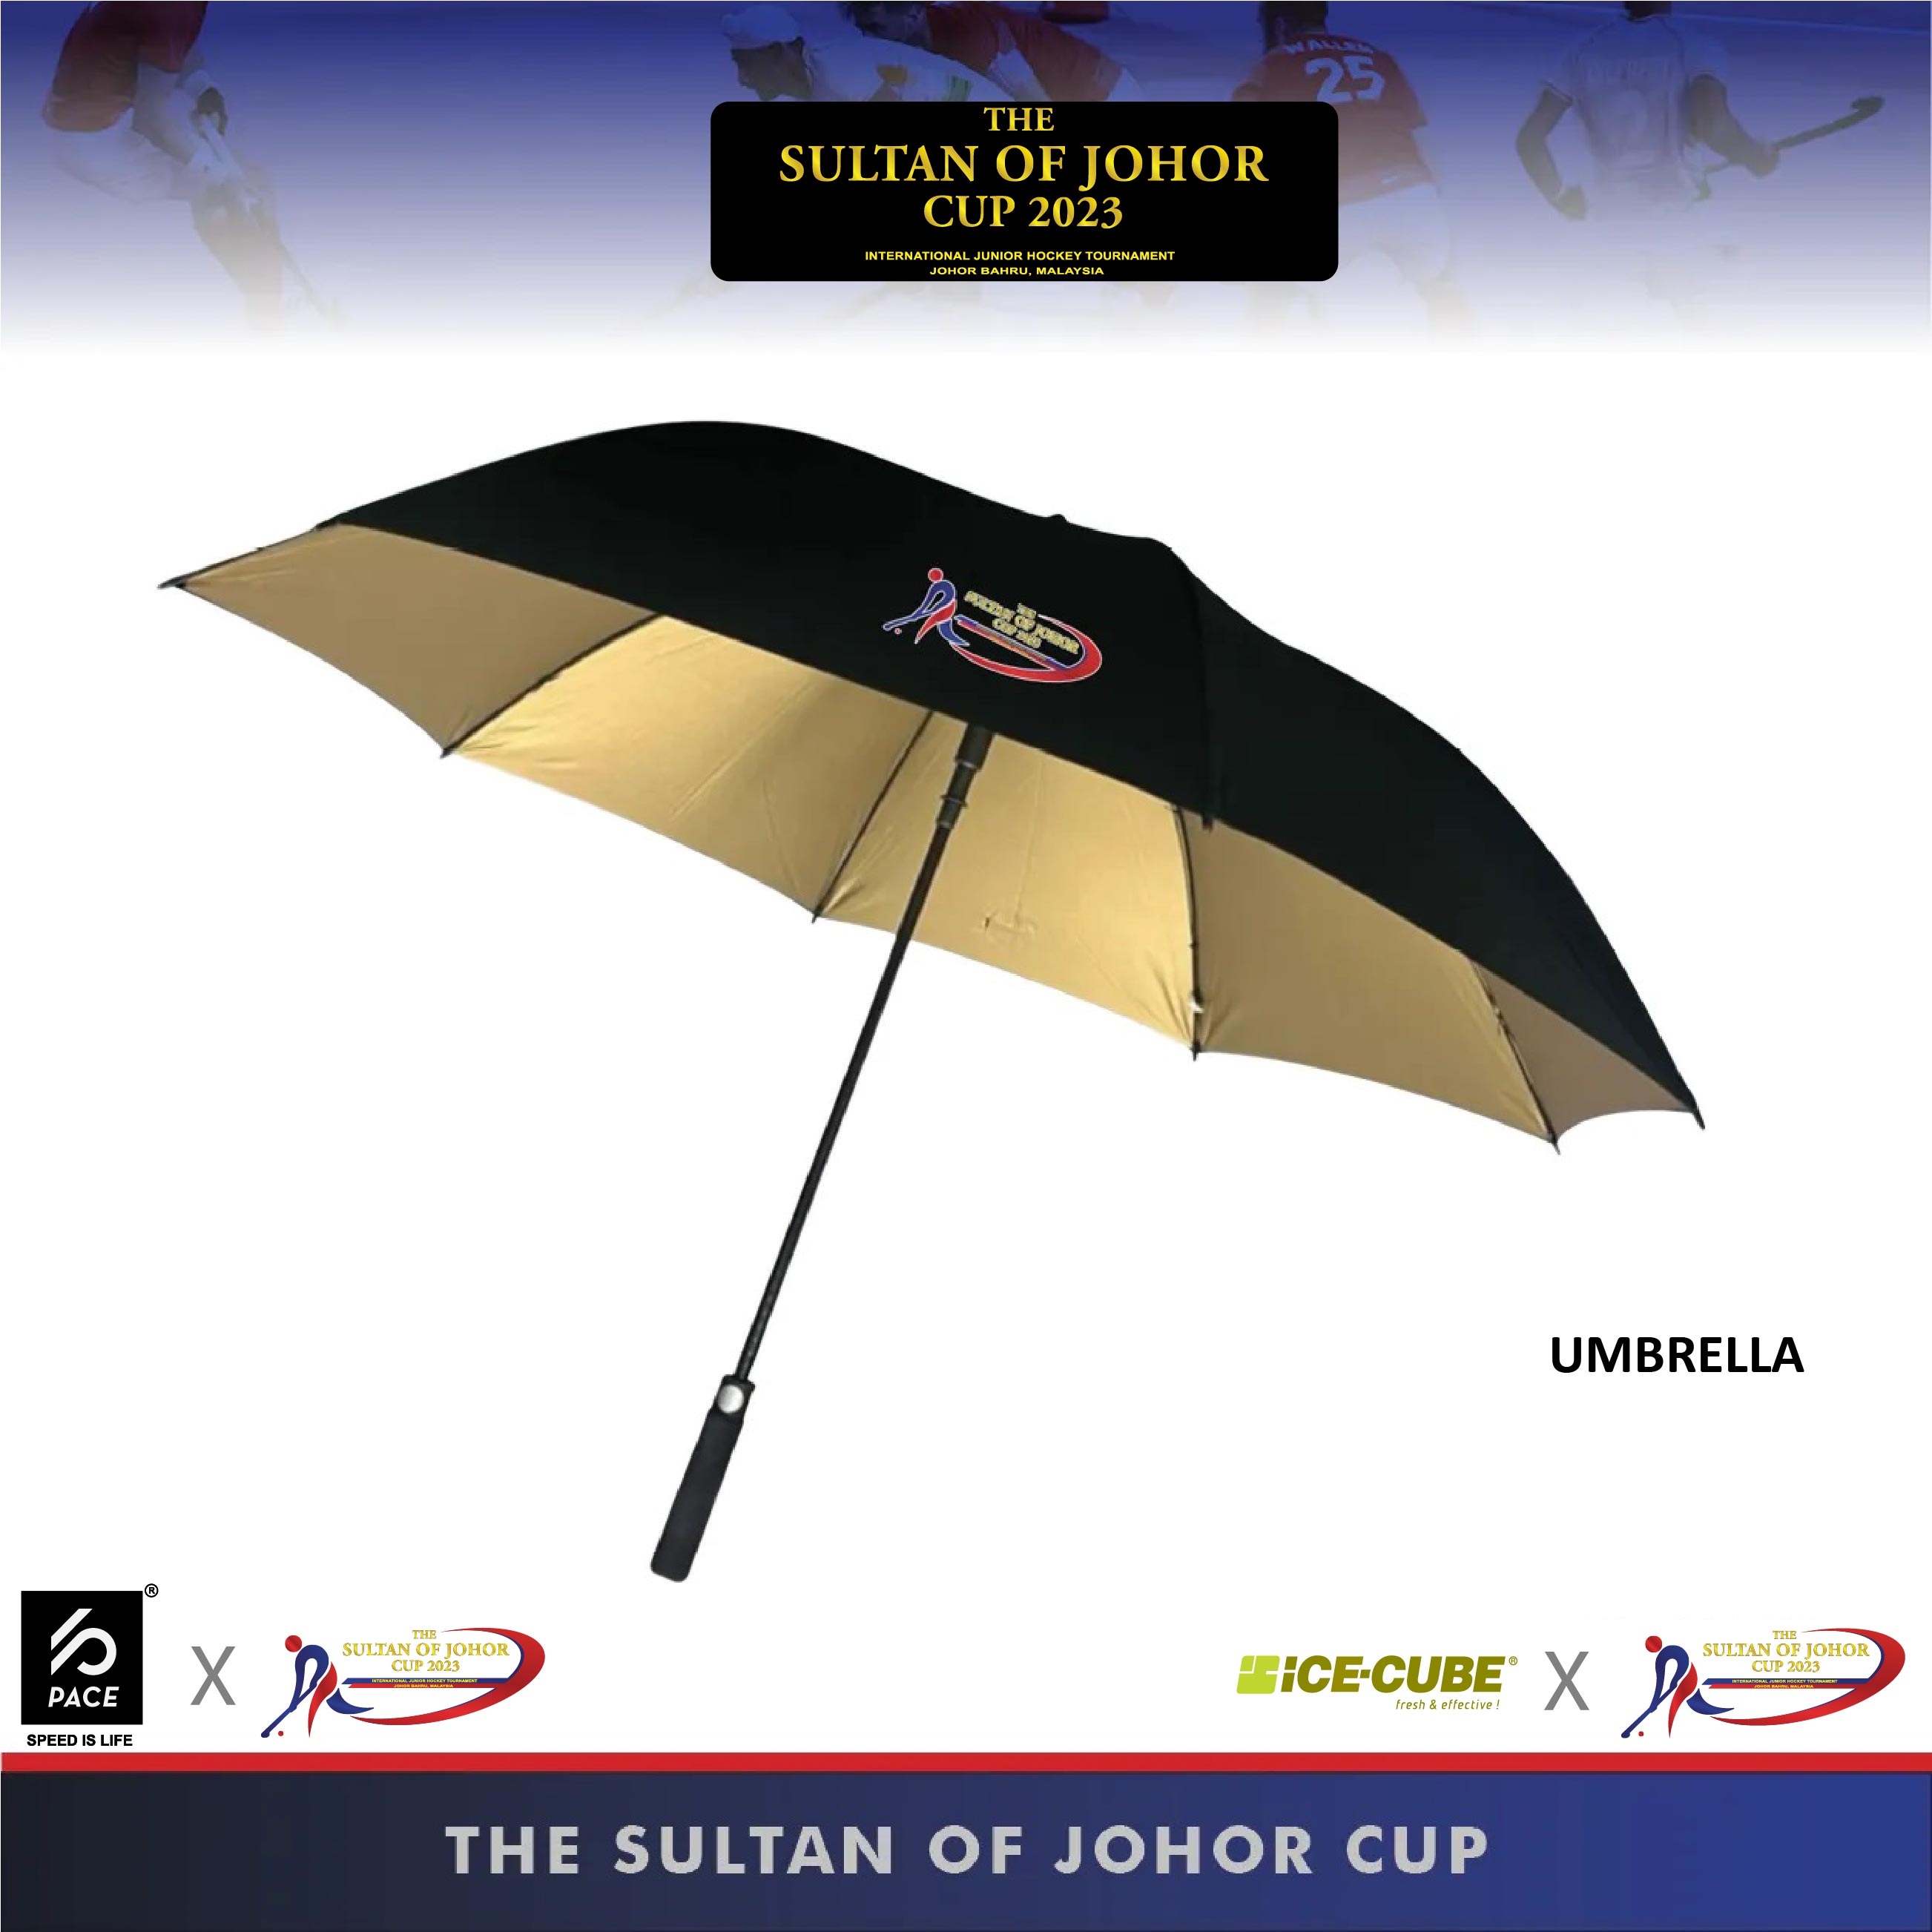 THE SULTAN OF JOHOR CUP - UMBRELLA